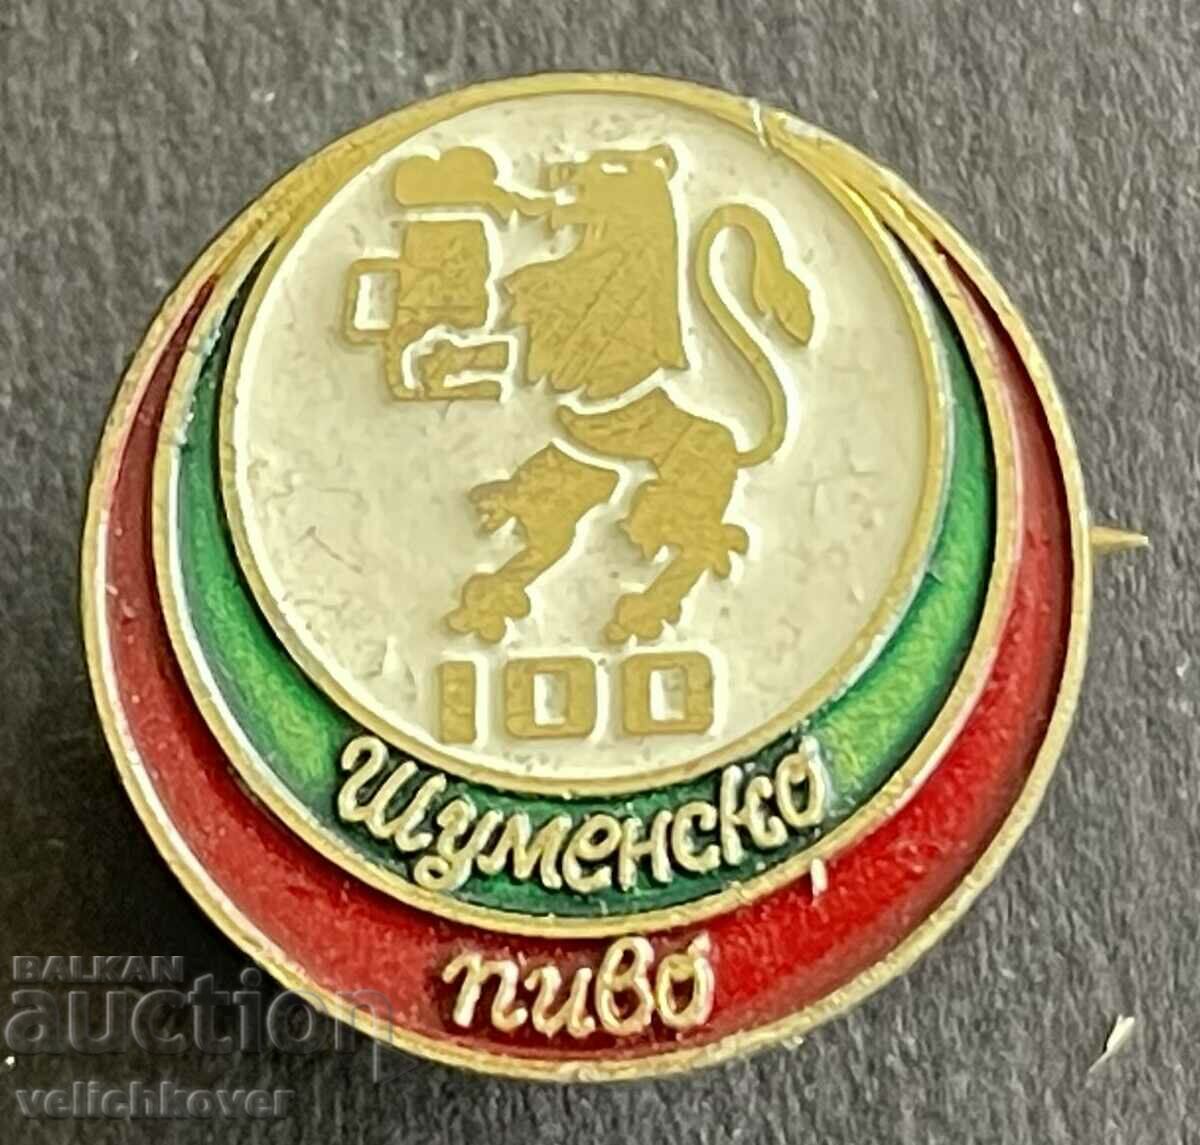 37713 Βουλγαρία υπογράφει 100 χρόνια. Μπύρα Shumensko pivo 1981.